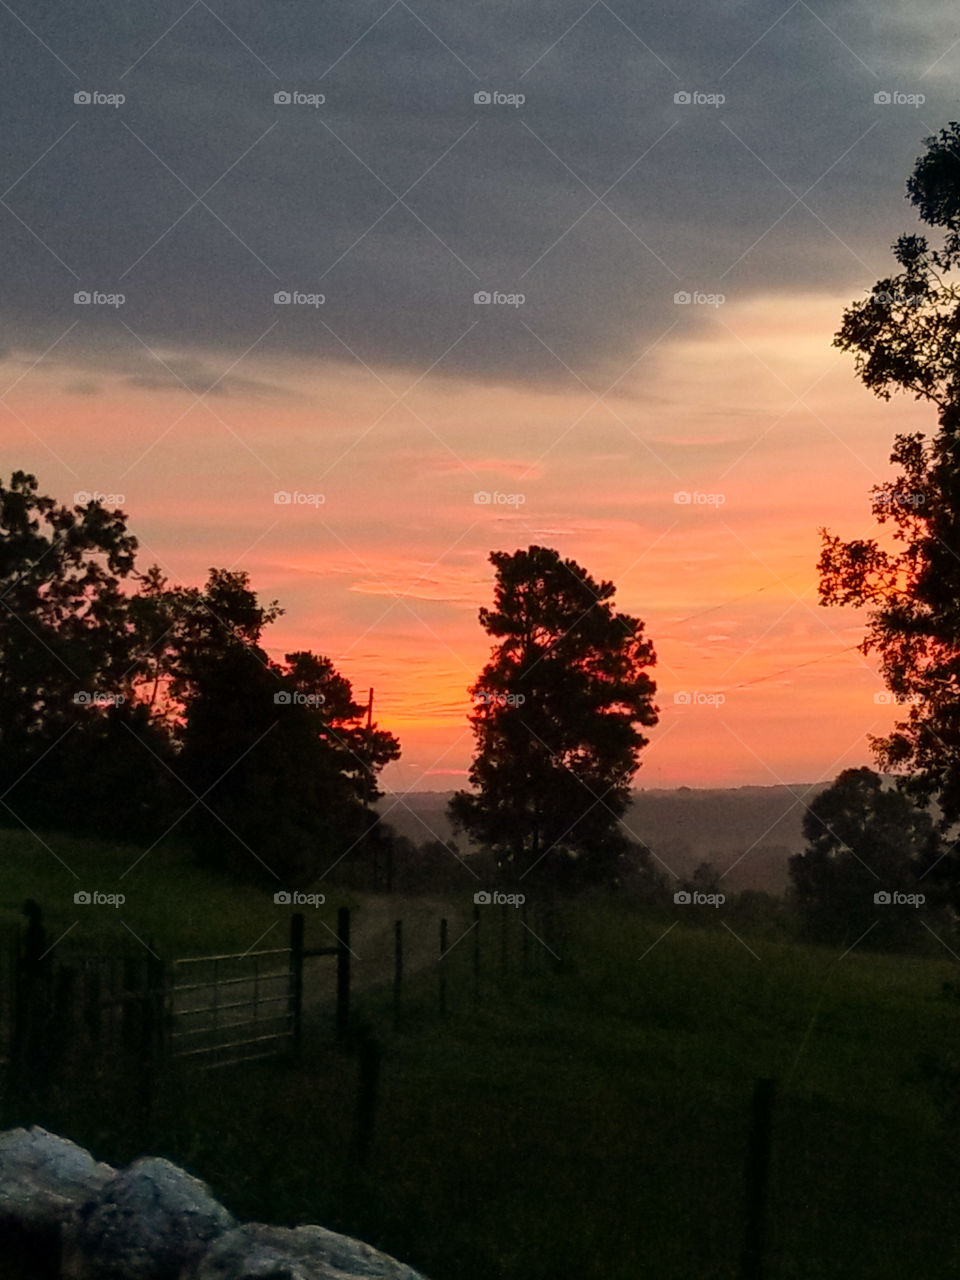 Alabama sunrise